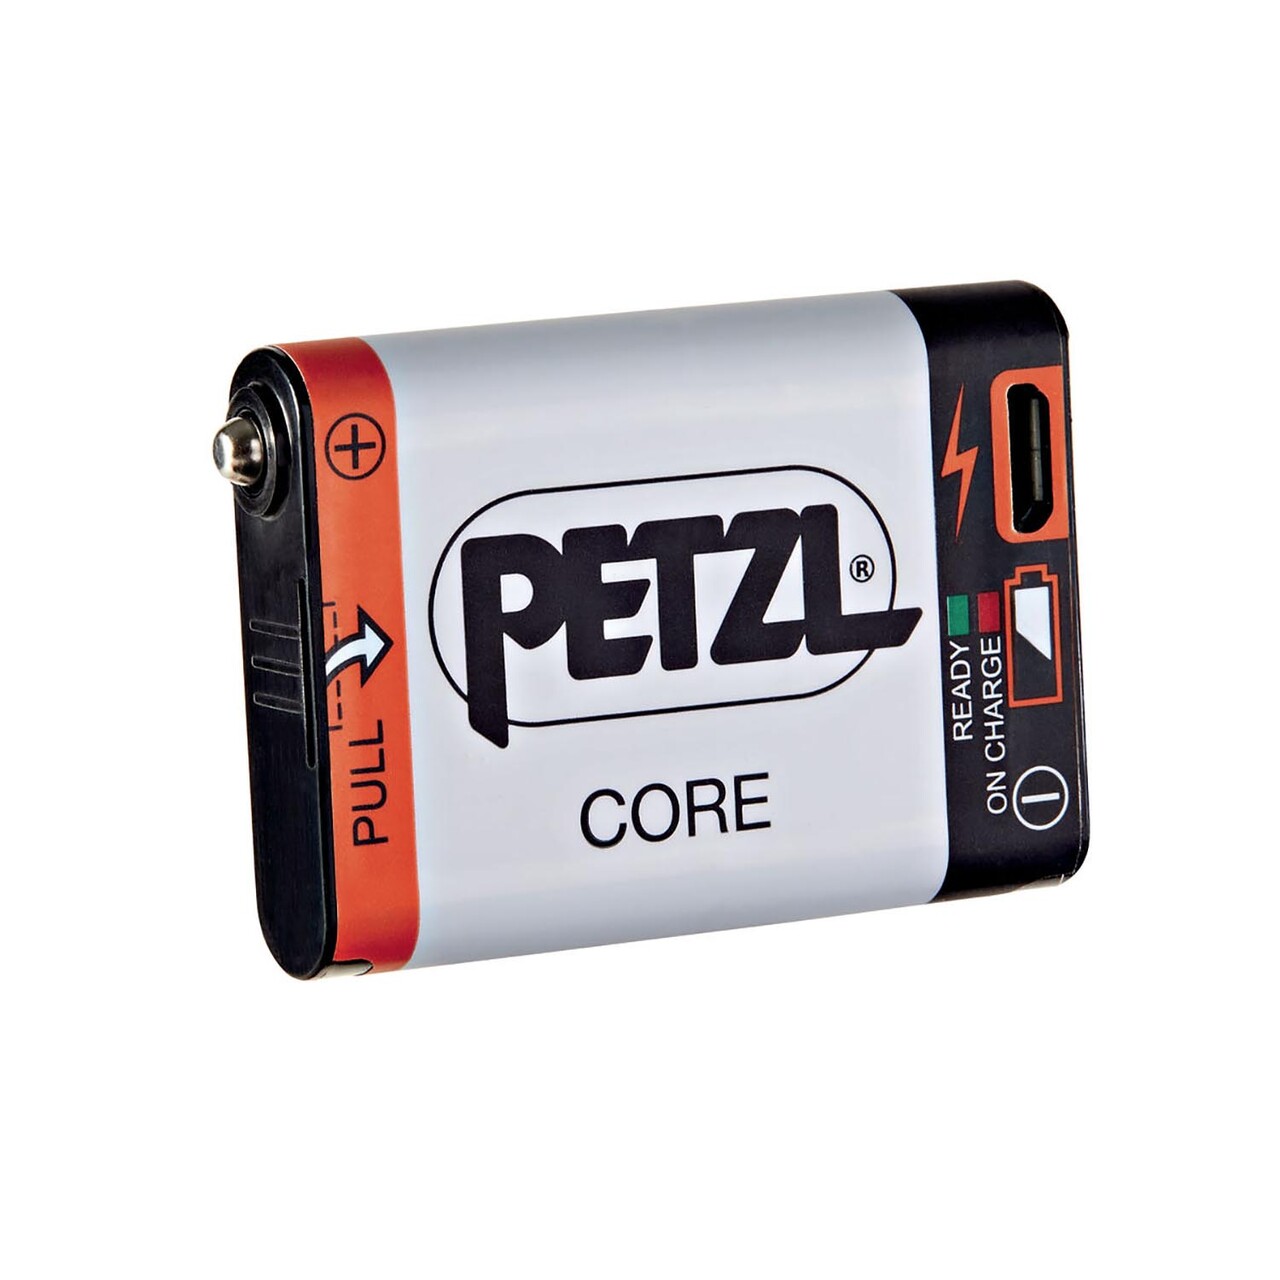 Se Batteri genopladeligt 1250 mah hybrid core petzl hos Friluftsland.dk